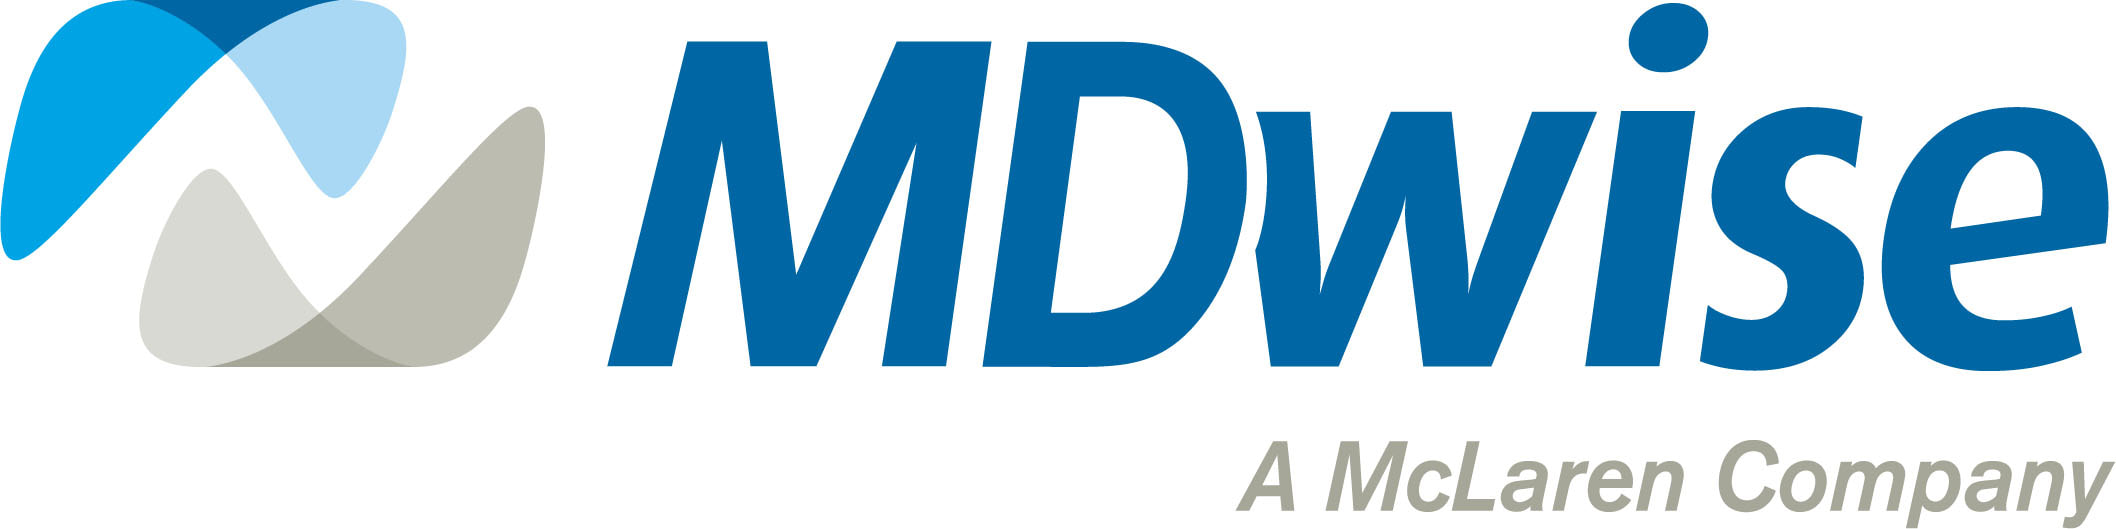 MD Wise Logo image